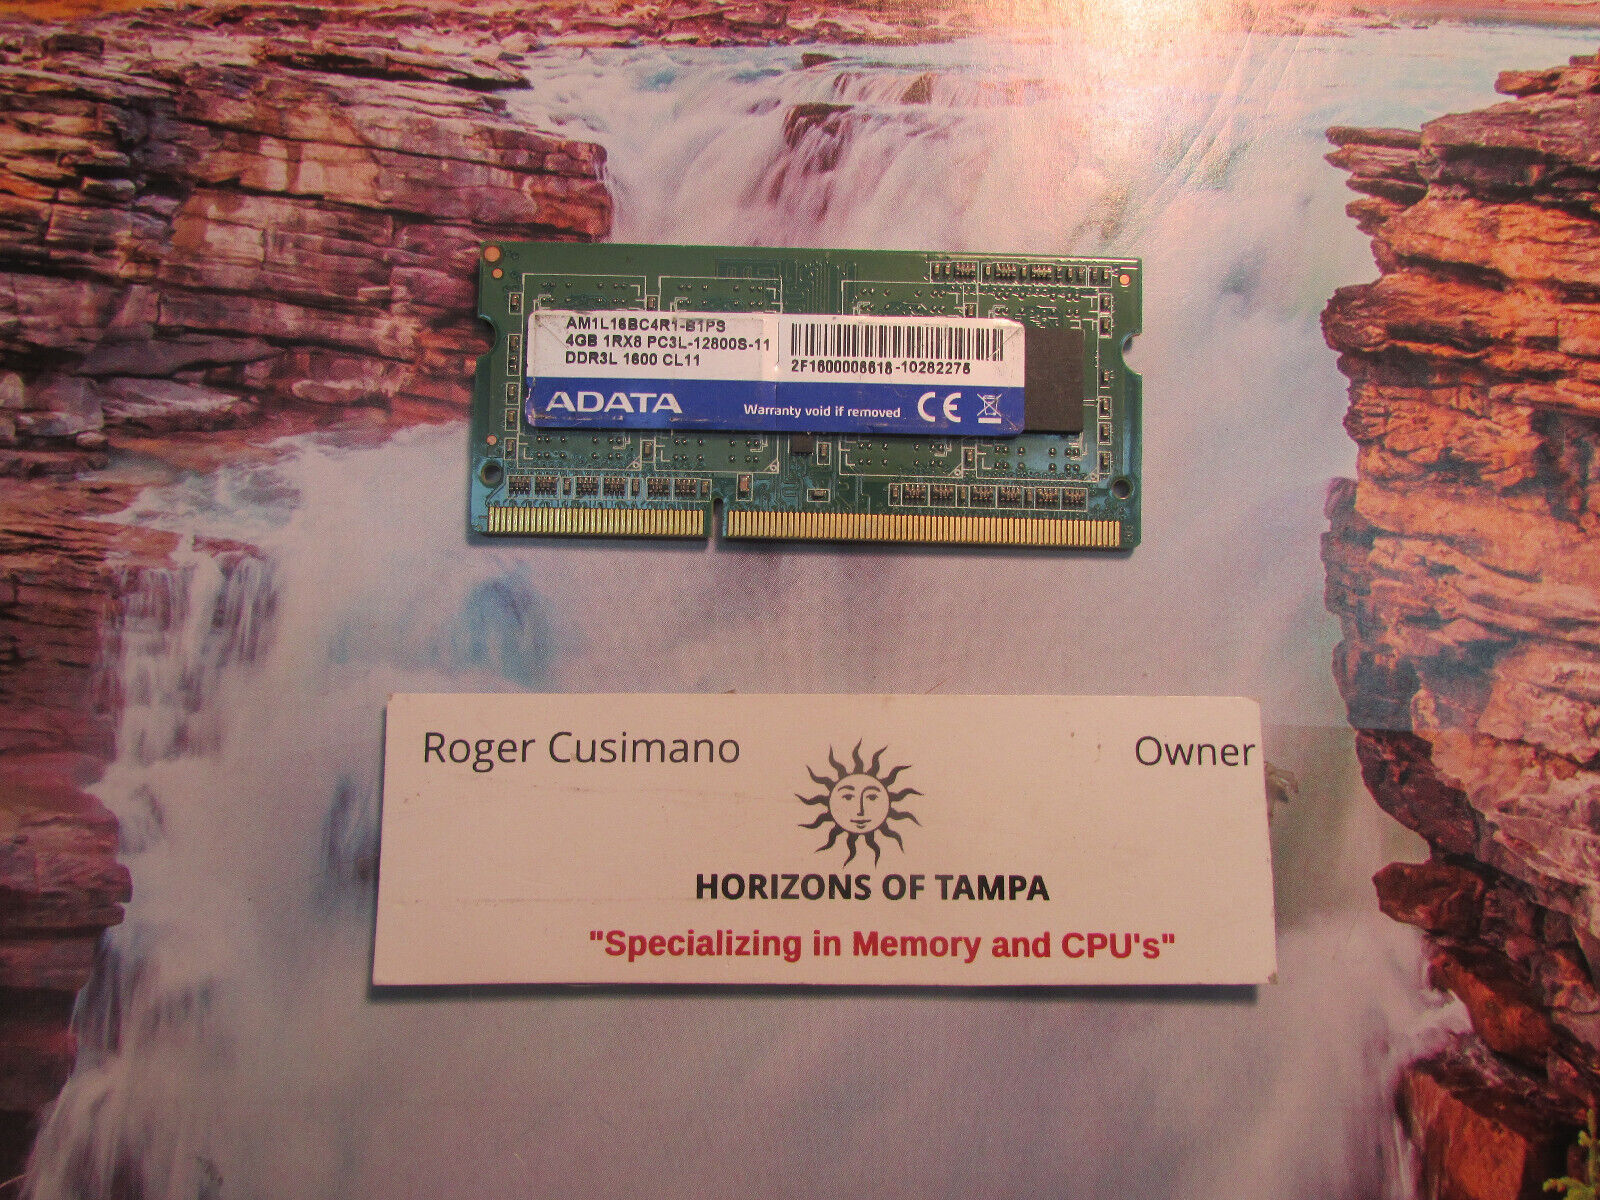 ADATA 4GB x1 DDR3 1600mhz 1.35v AM1L16BC4R1-B1PS SODIMM RAM - SINGLE